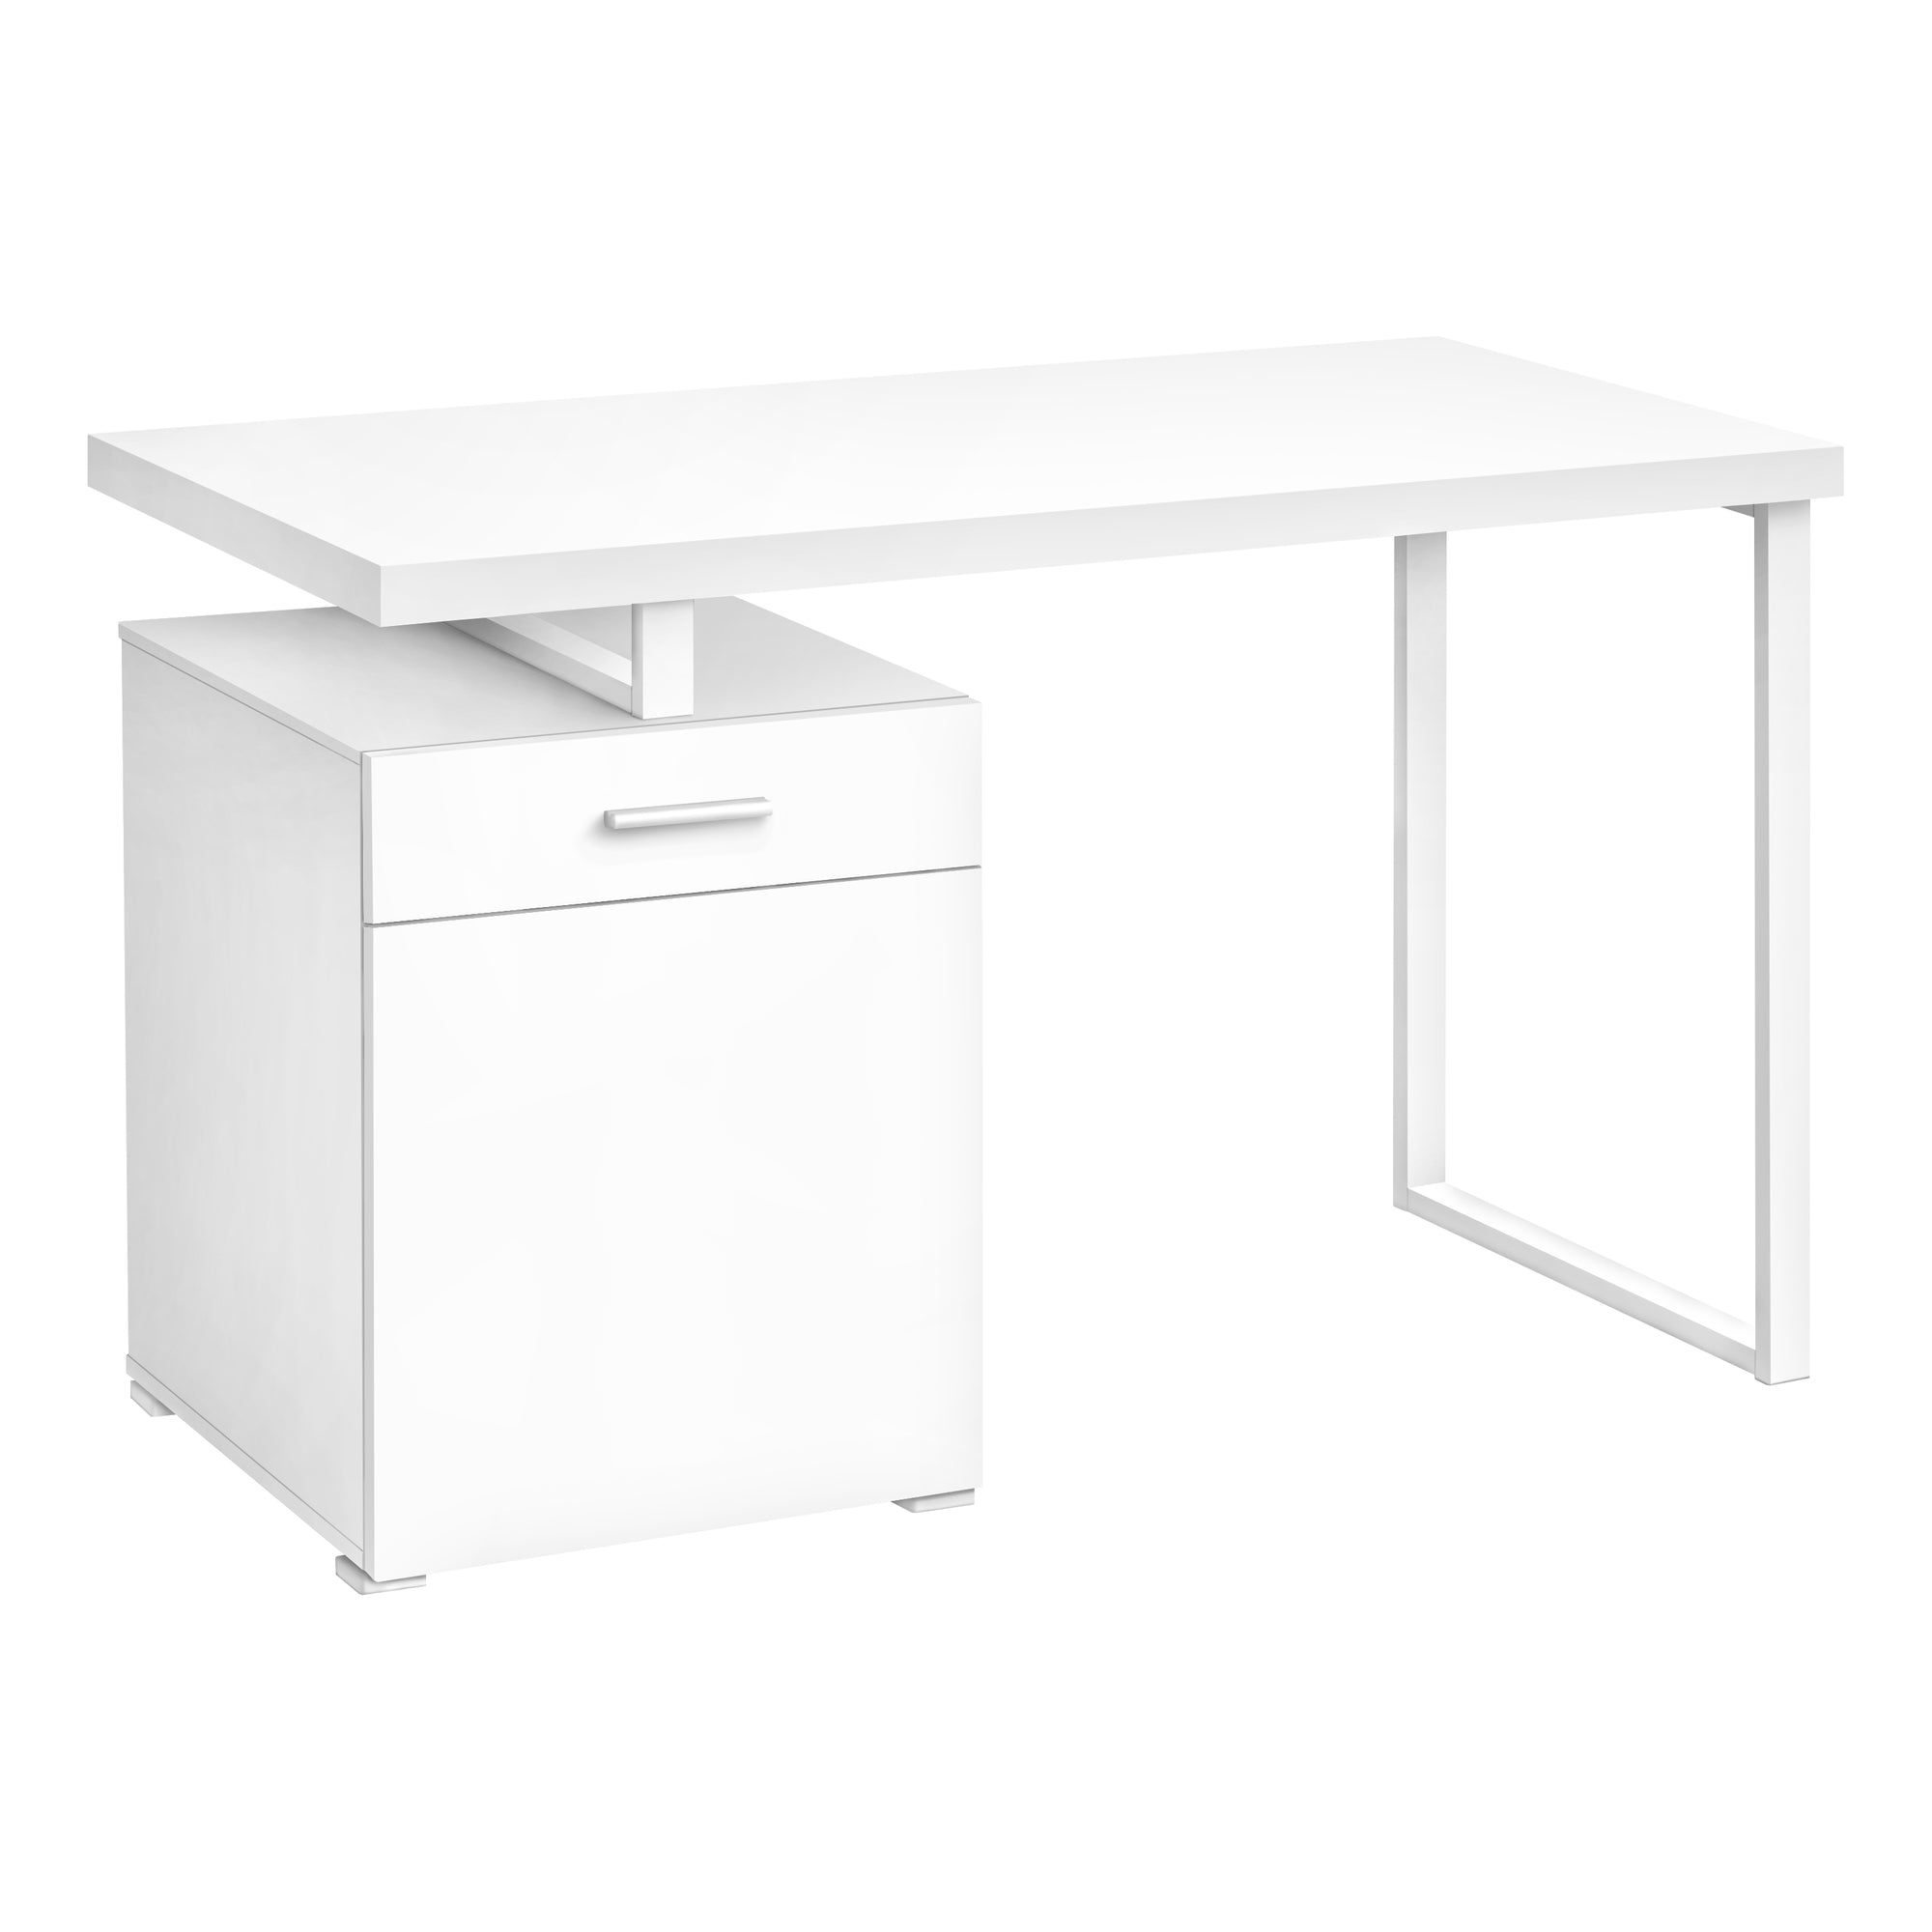 MN-147760    Computer Desk - Storage Drawer / Cabinet / Left Or Right Setup / Floating Desktop - 48"L - White / White